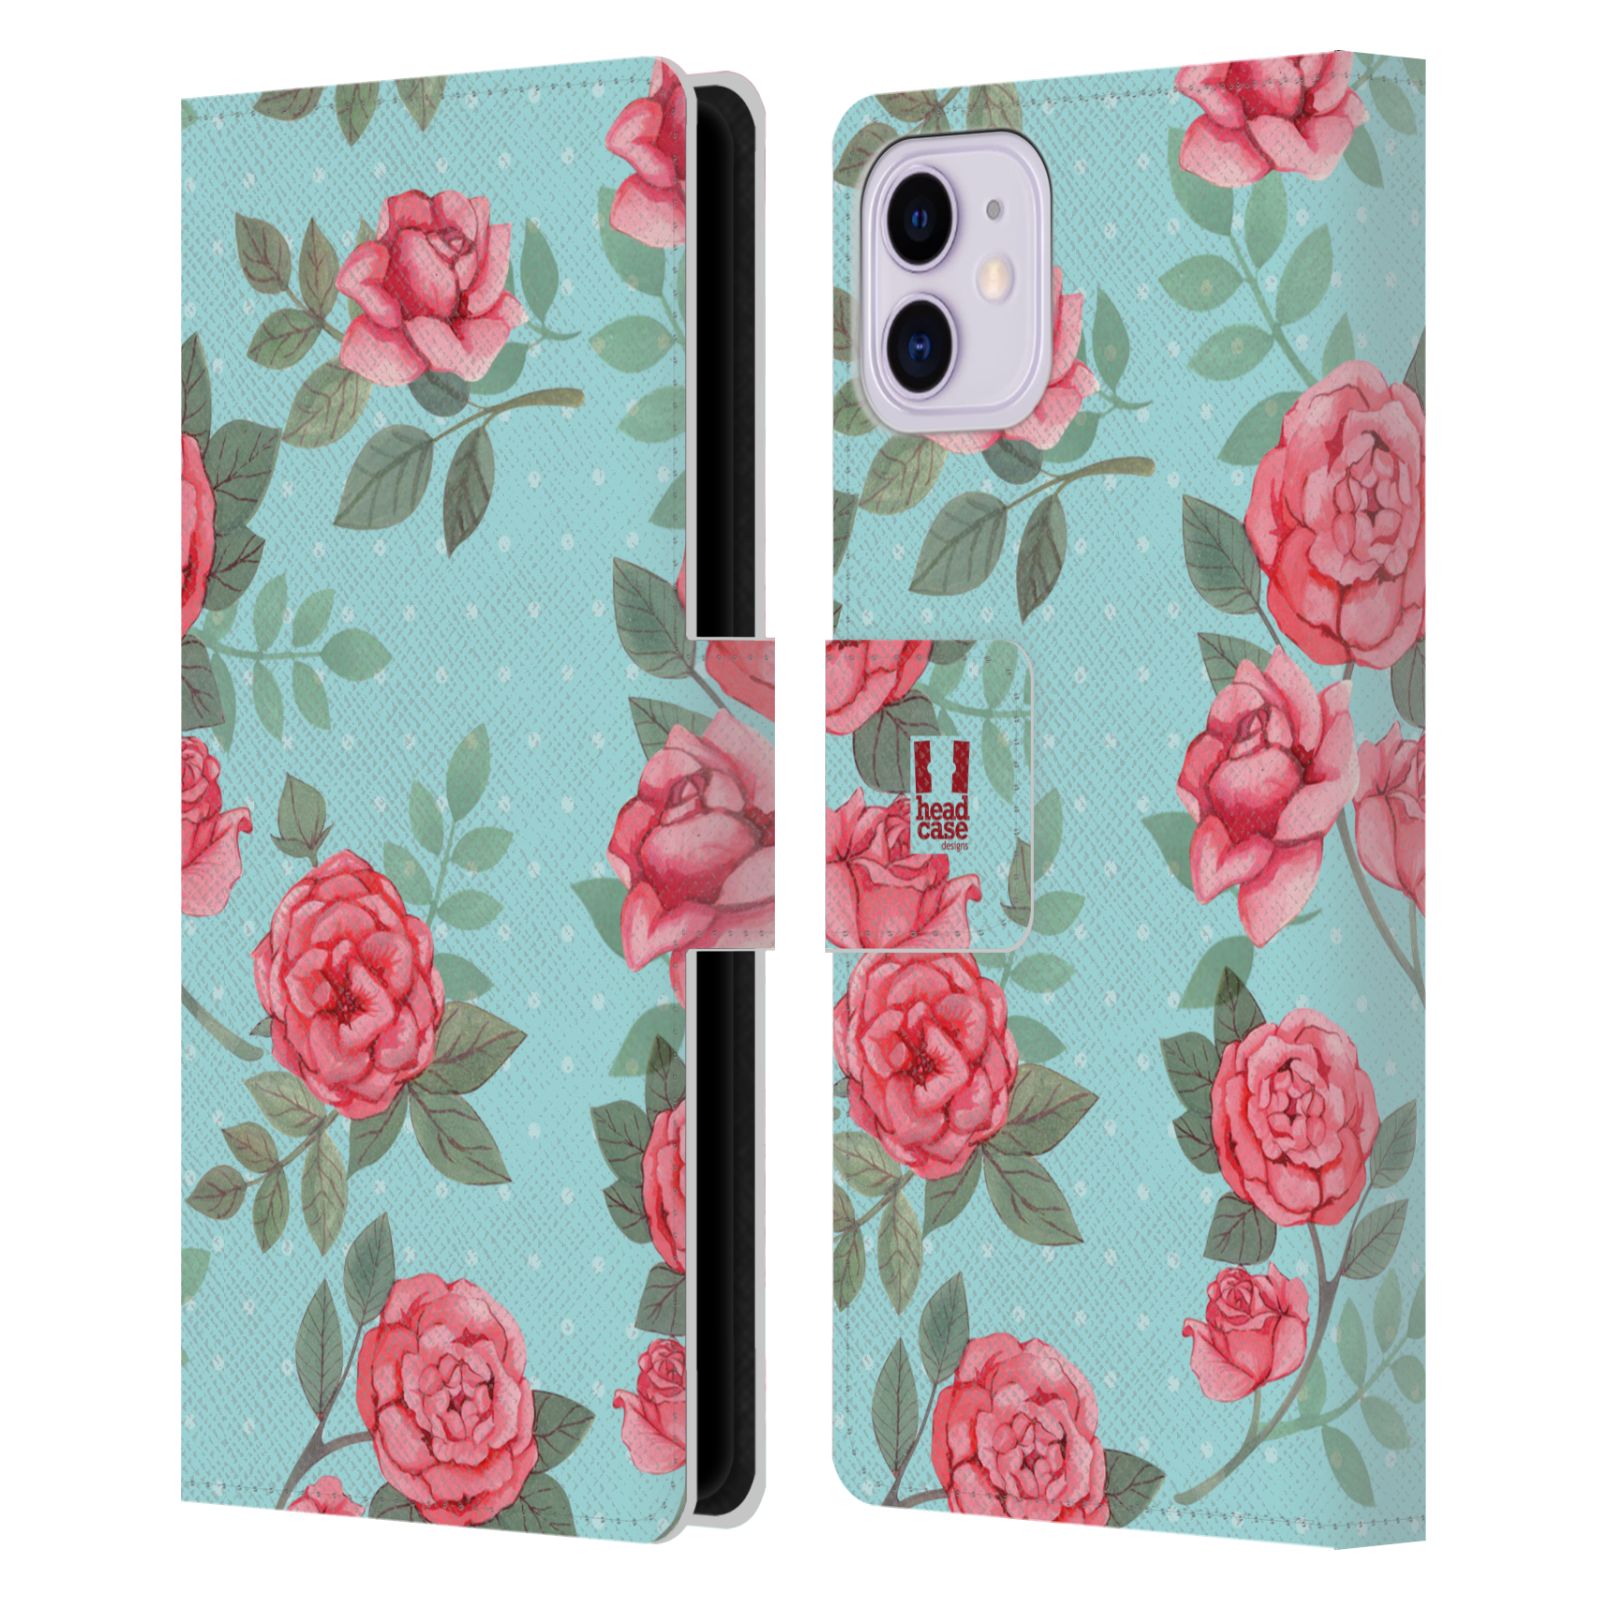 Pouzdro na mobil Apple Iphone 11 romantické květy velké růže modrá a růžová